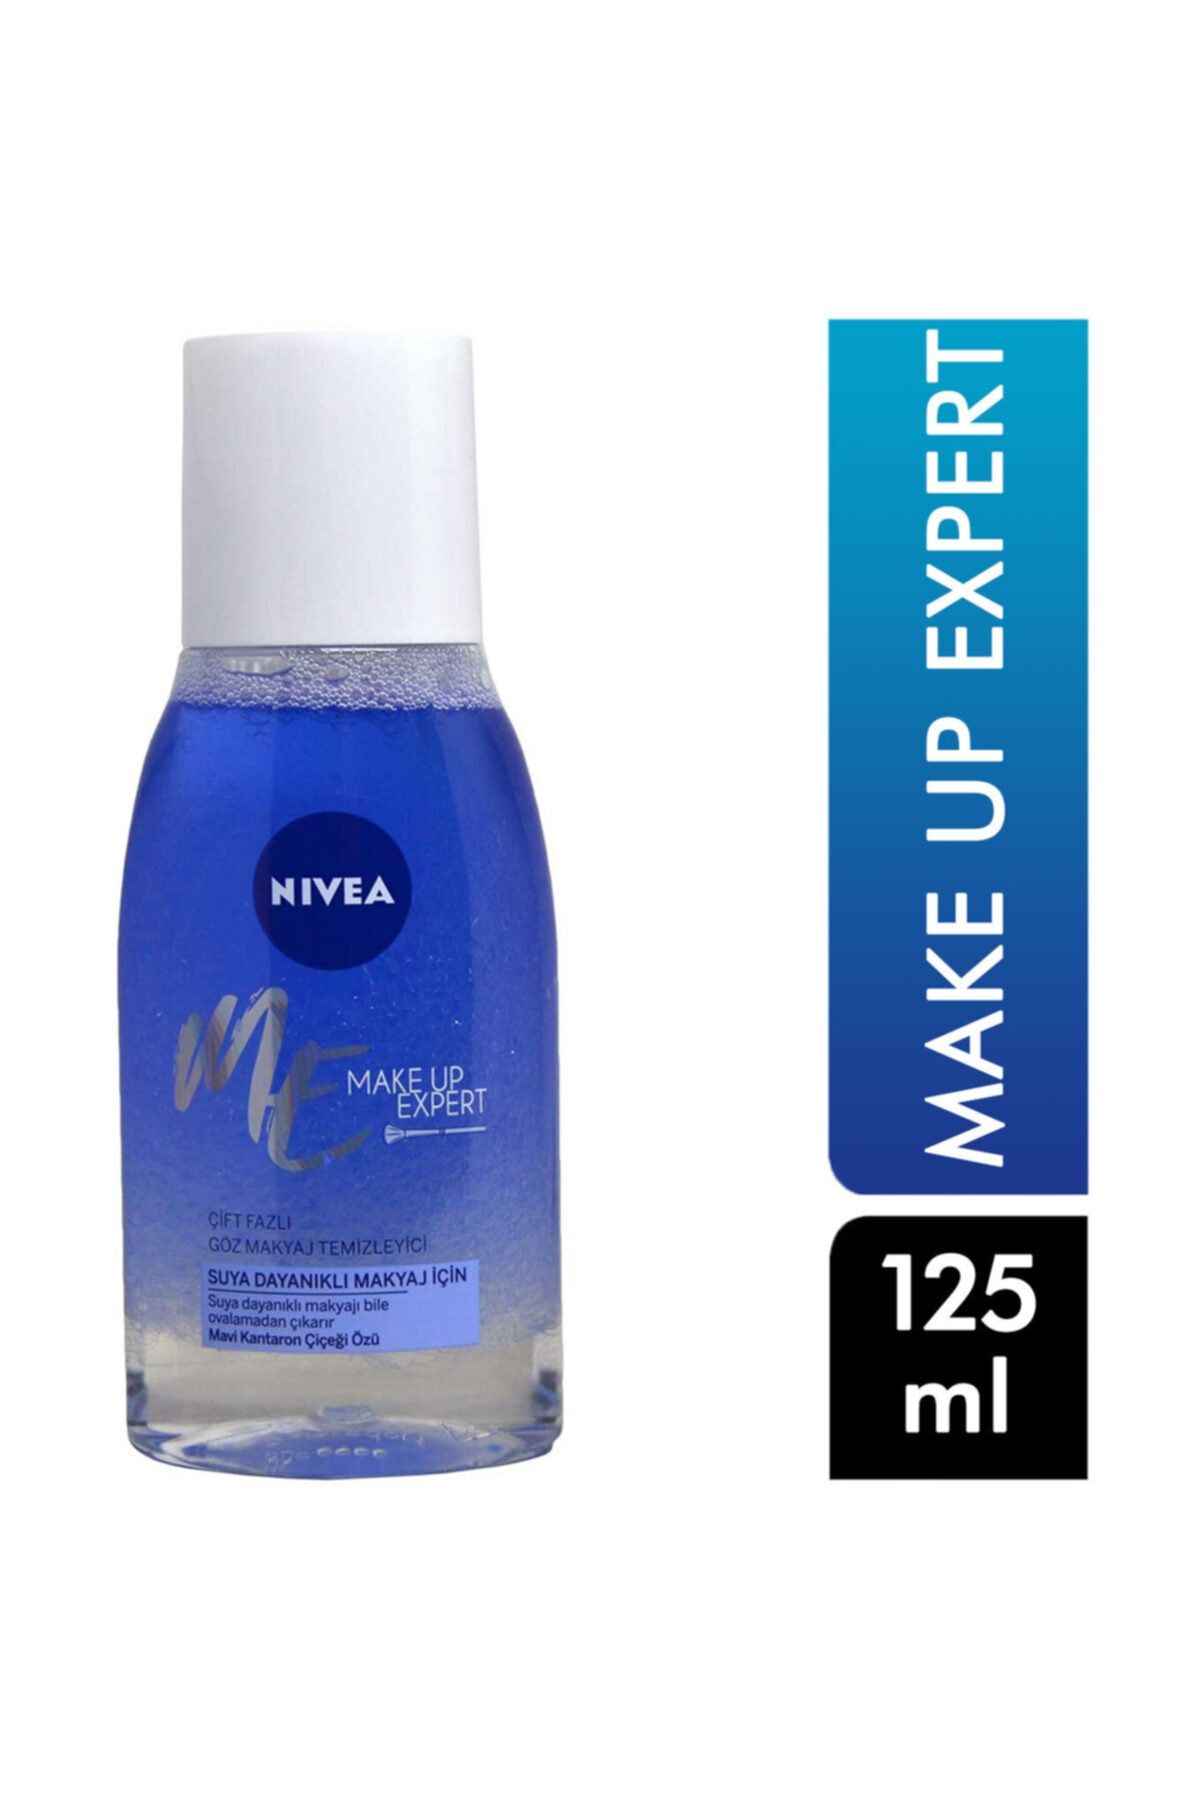 NIVEA Göz Makyajı Temizleyici 125 Ml Make Up Expert Çift Fazlı Mavi Kantaron Çiçeği Özü